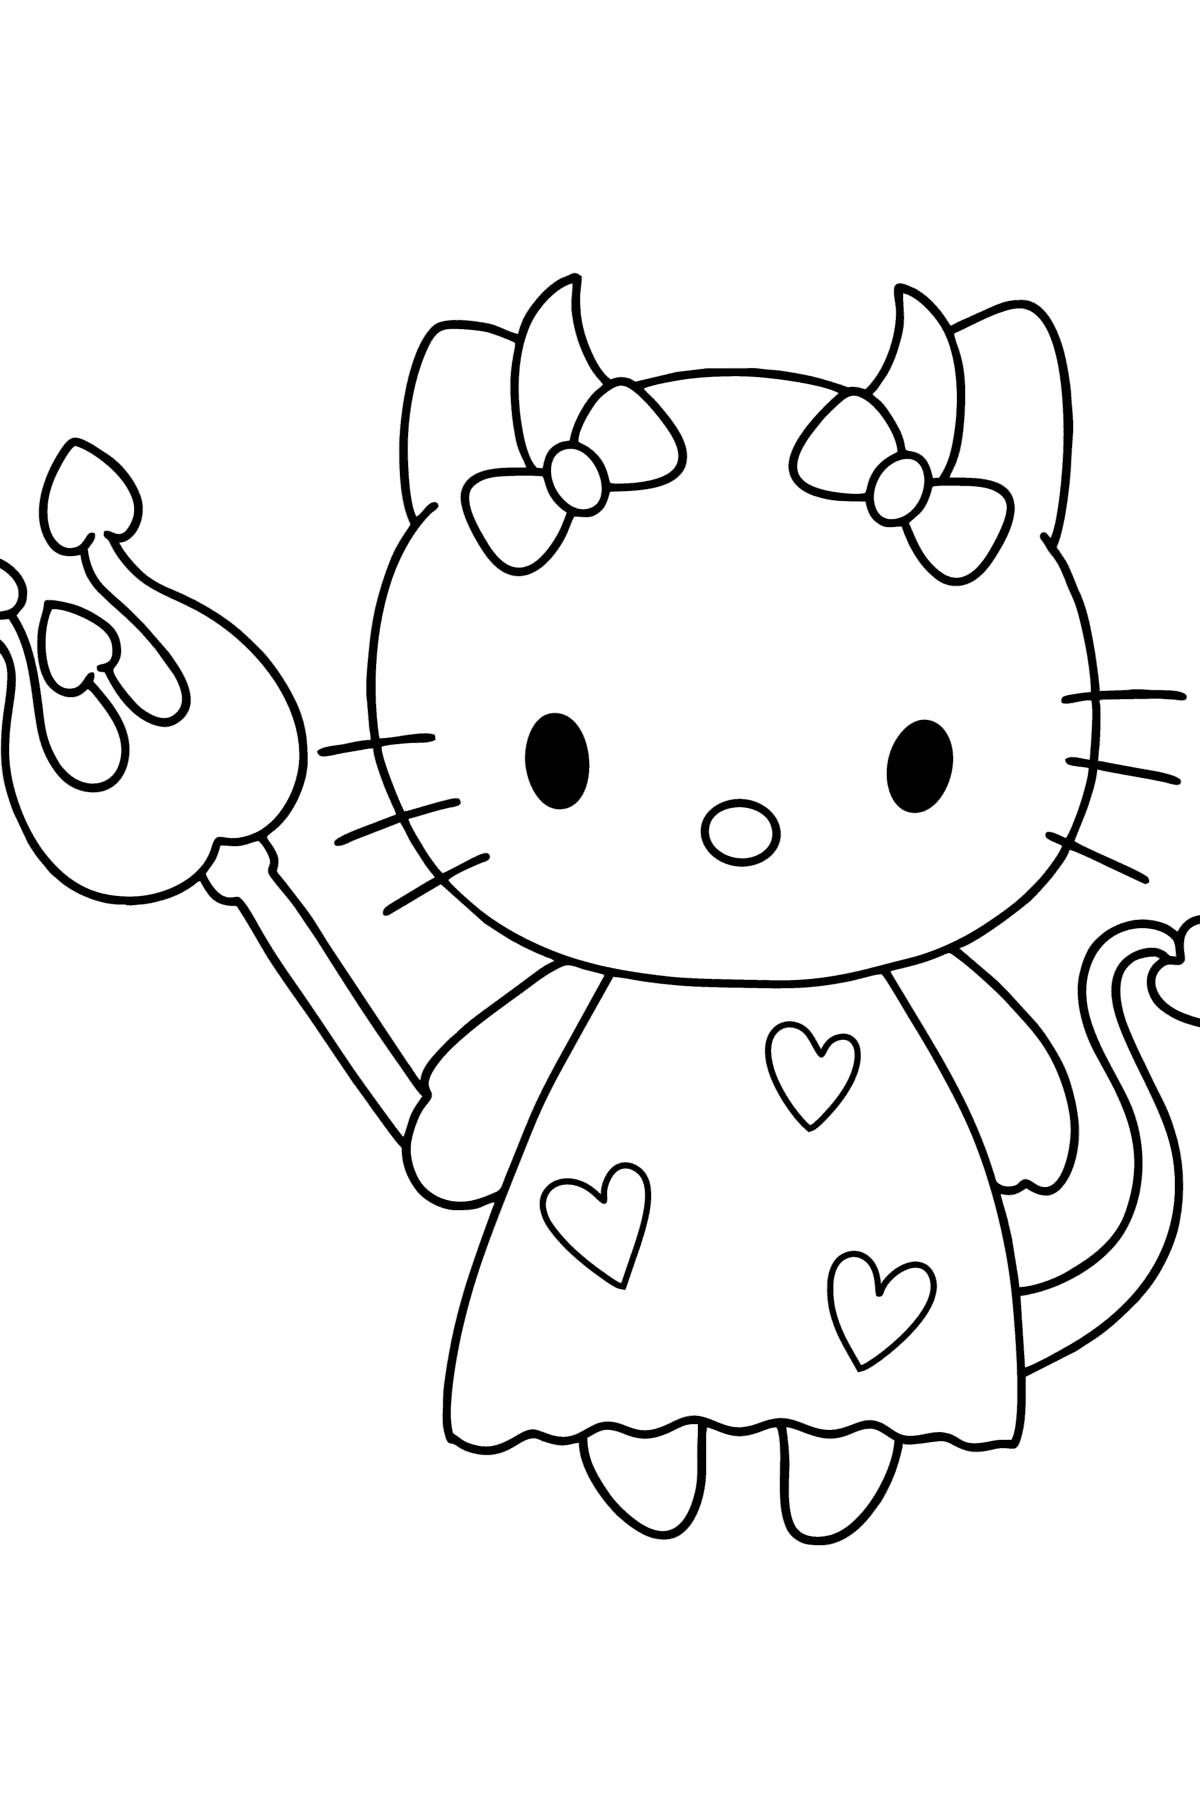 Desen de colorat Hello Kitty diavol - Desene de colorat pentru copii